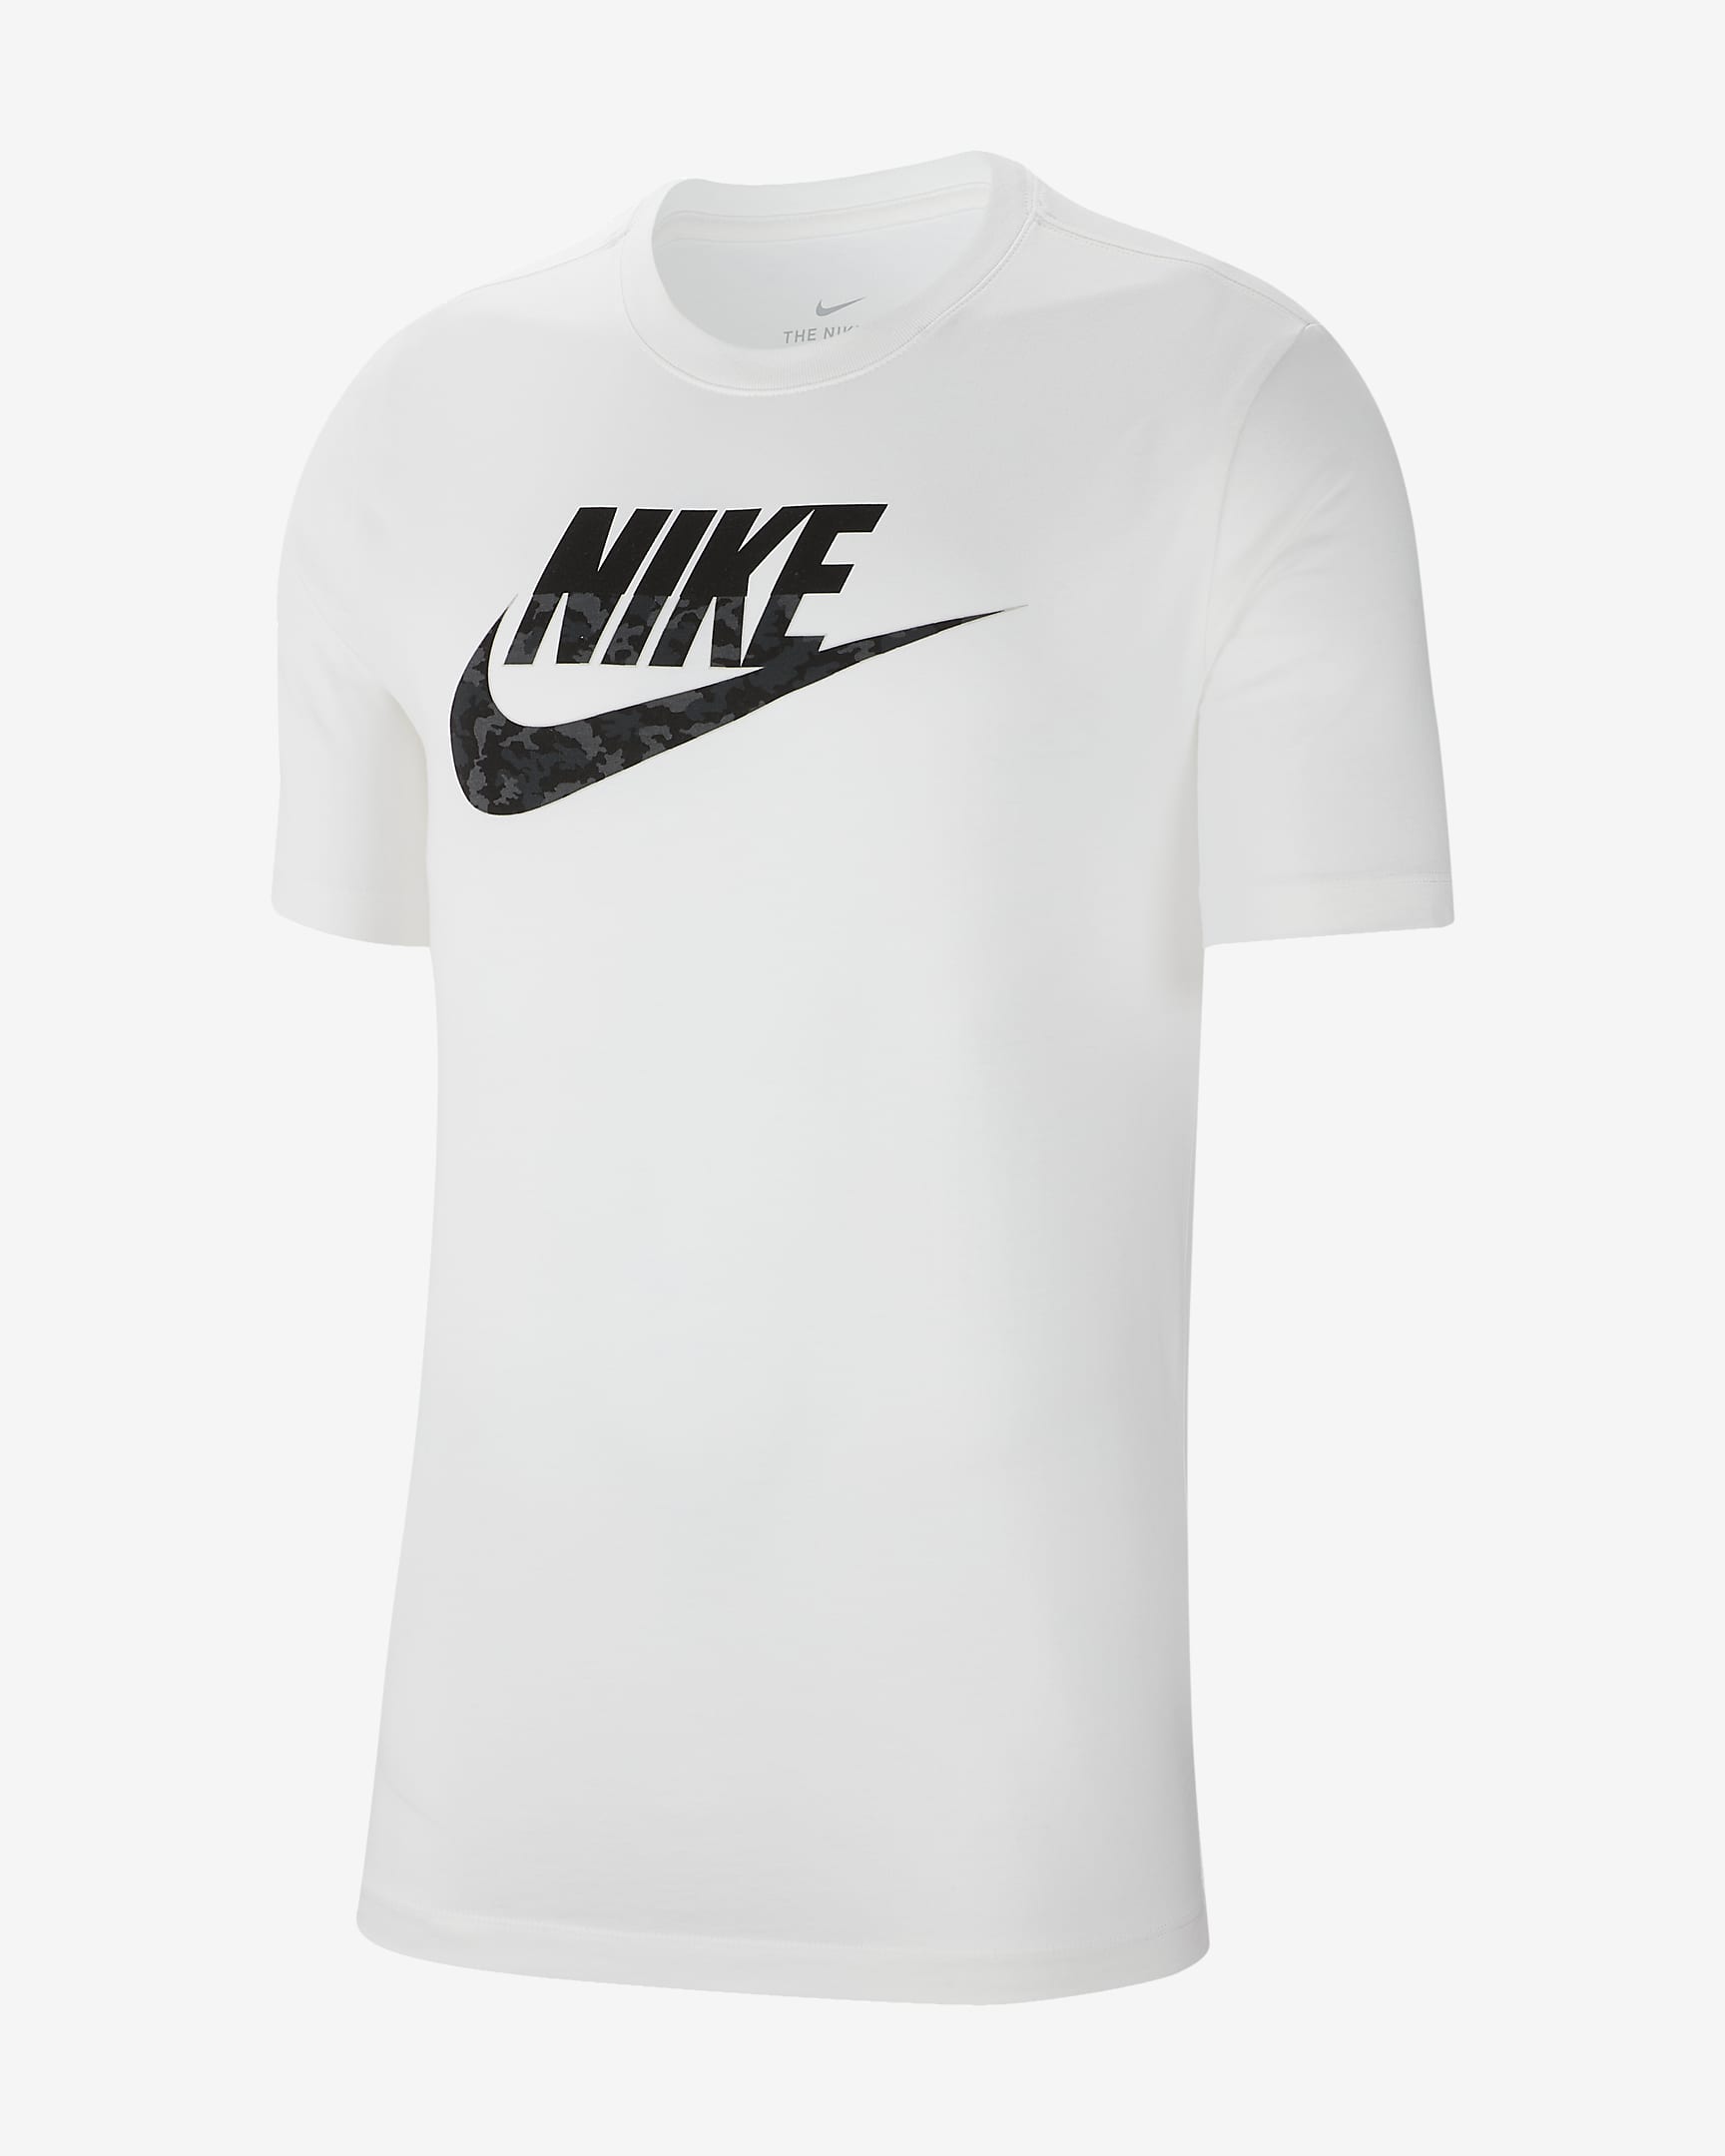 Nike Sportswear Men's Camo T-Shirt. Nike DK